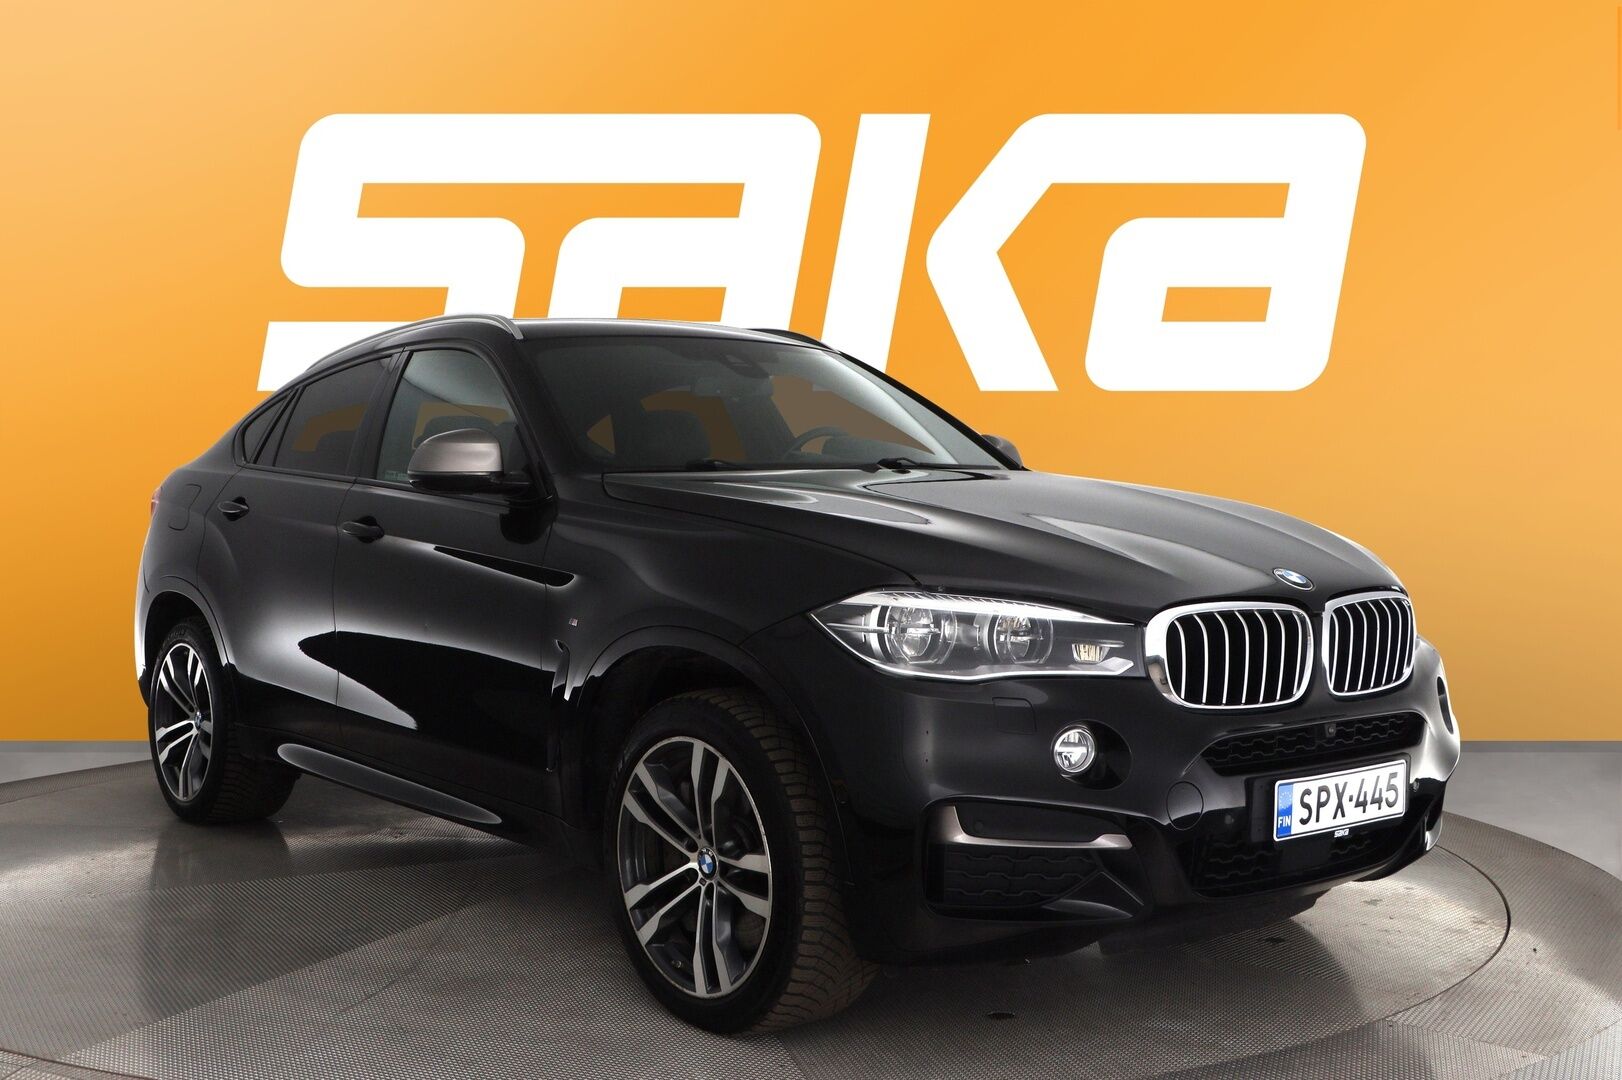 Musta Maastoauto, BMW X6 – SPX-445